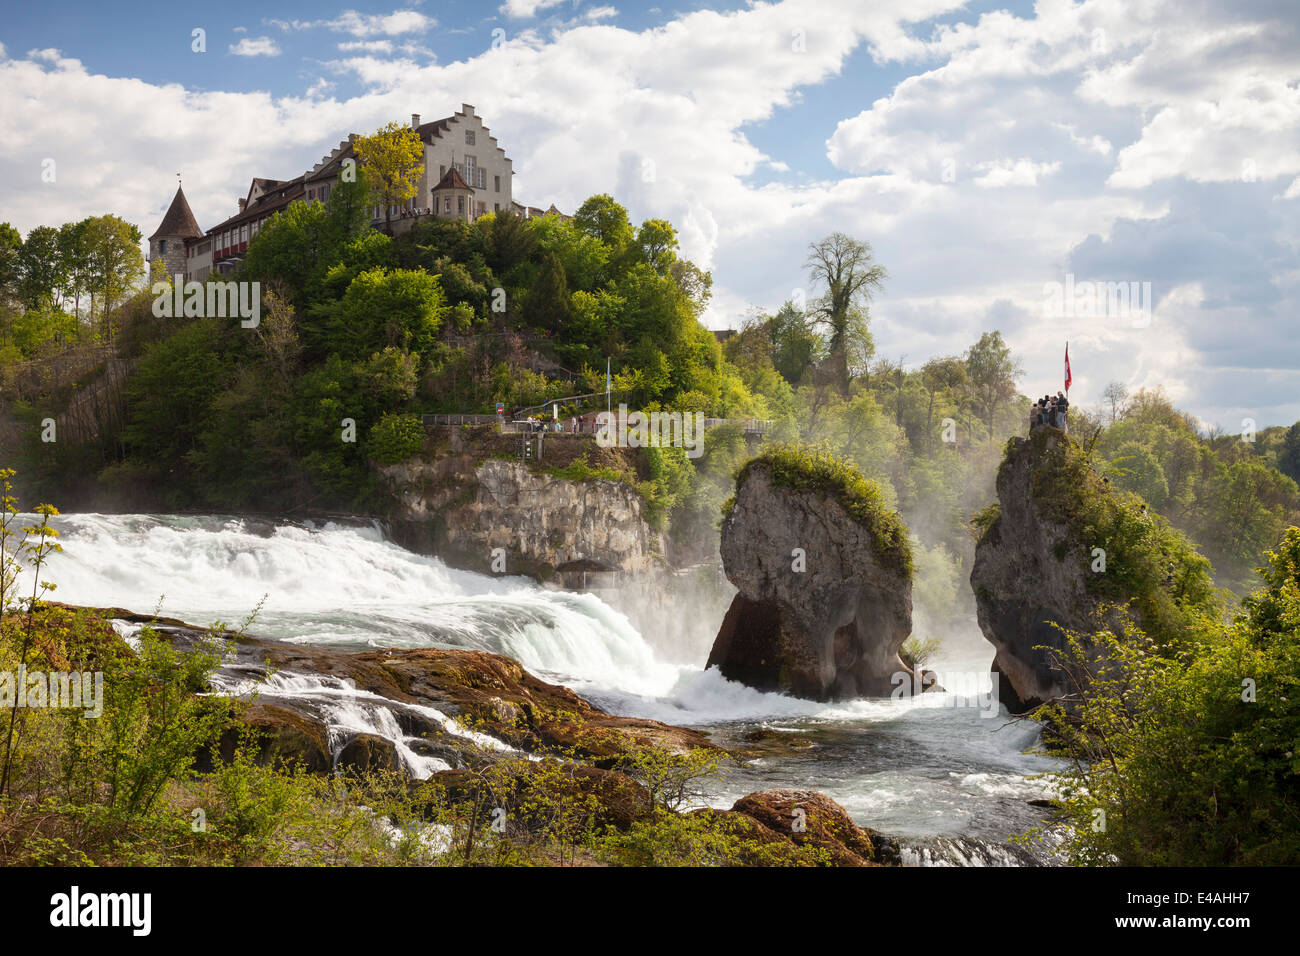 Switzerland, Schaffhausen, Rhine falls with Laufen Castle Stock Photo